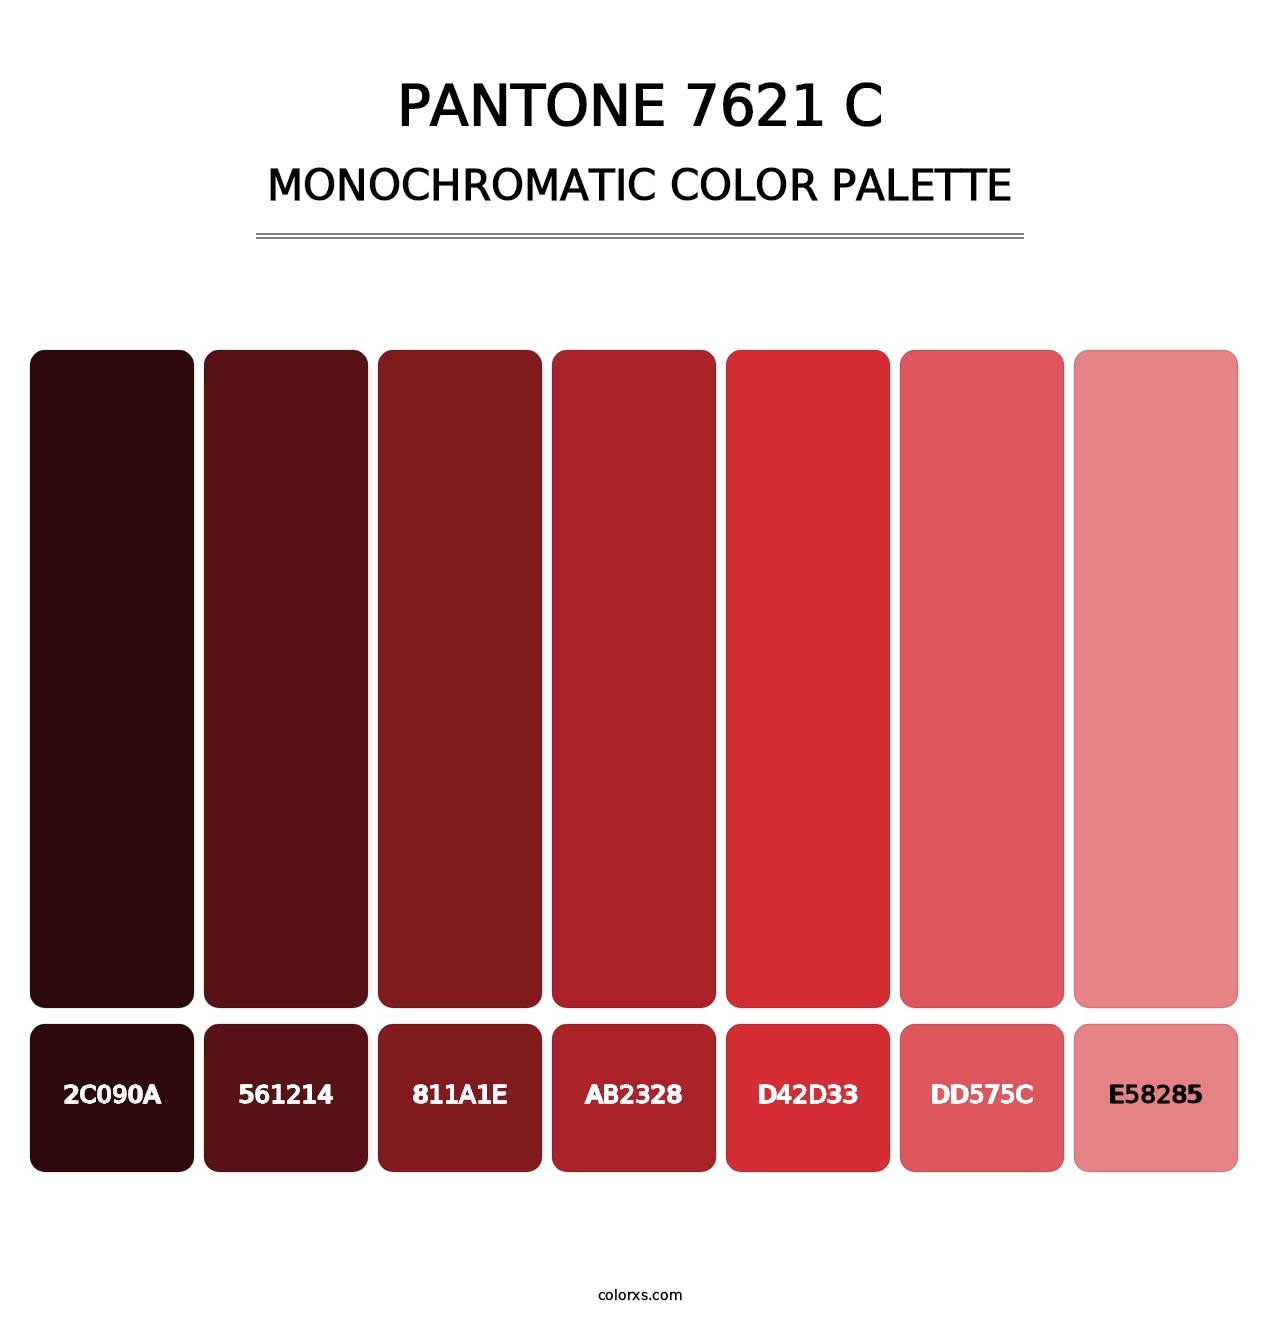 PANTONE 7621 C - Monochromatic Color Palette